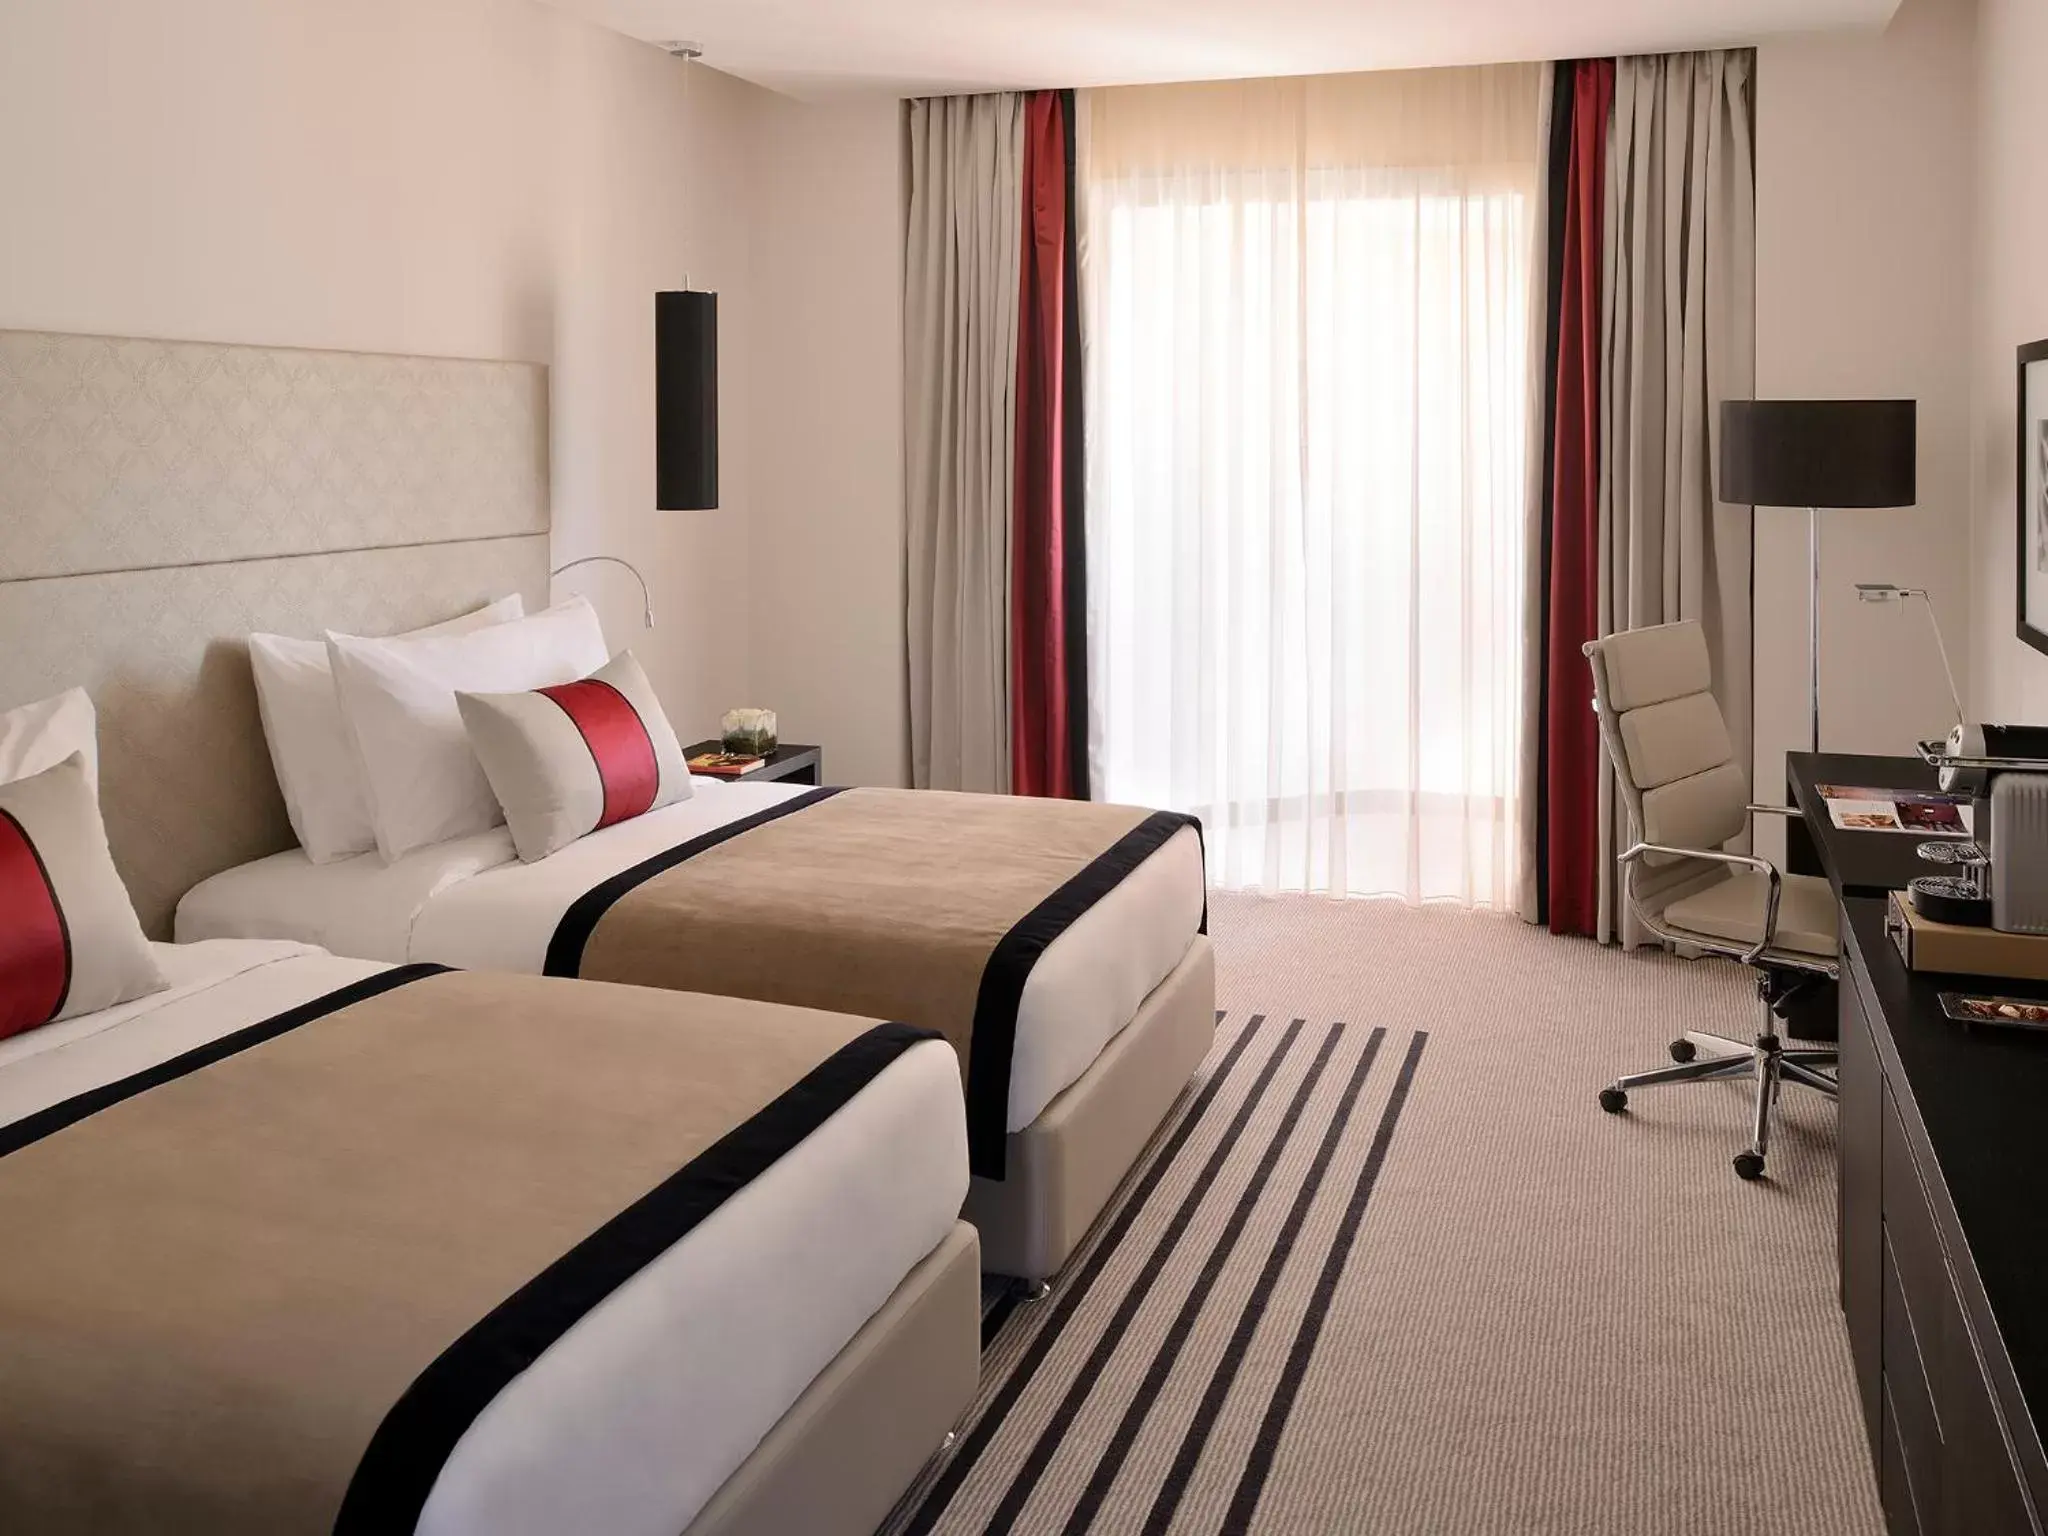 Bed, Room Photo in voco - Riyadh, an IHG Hotel